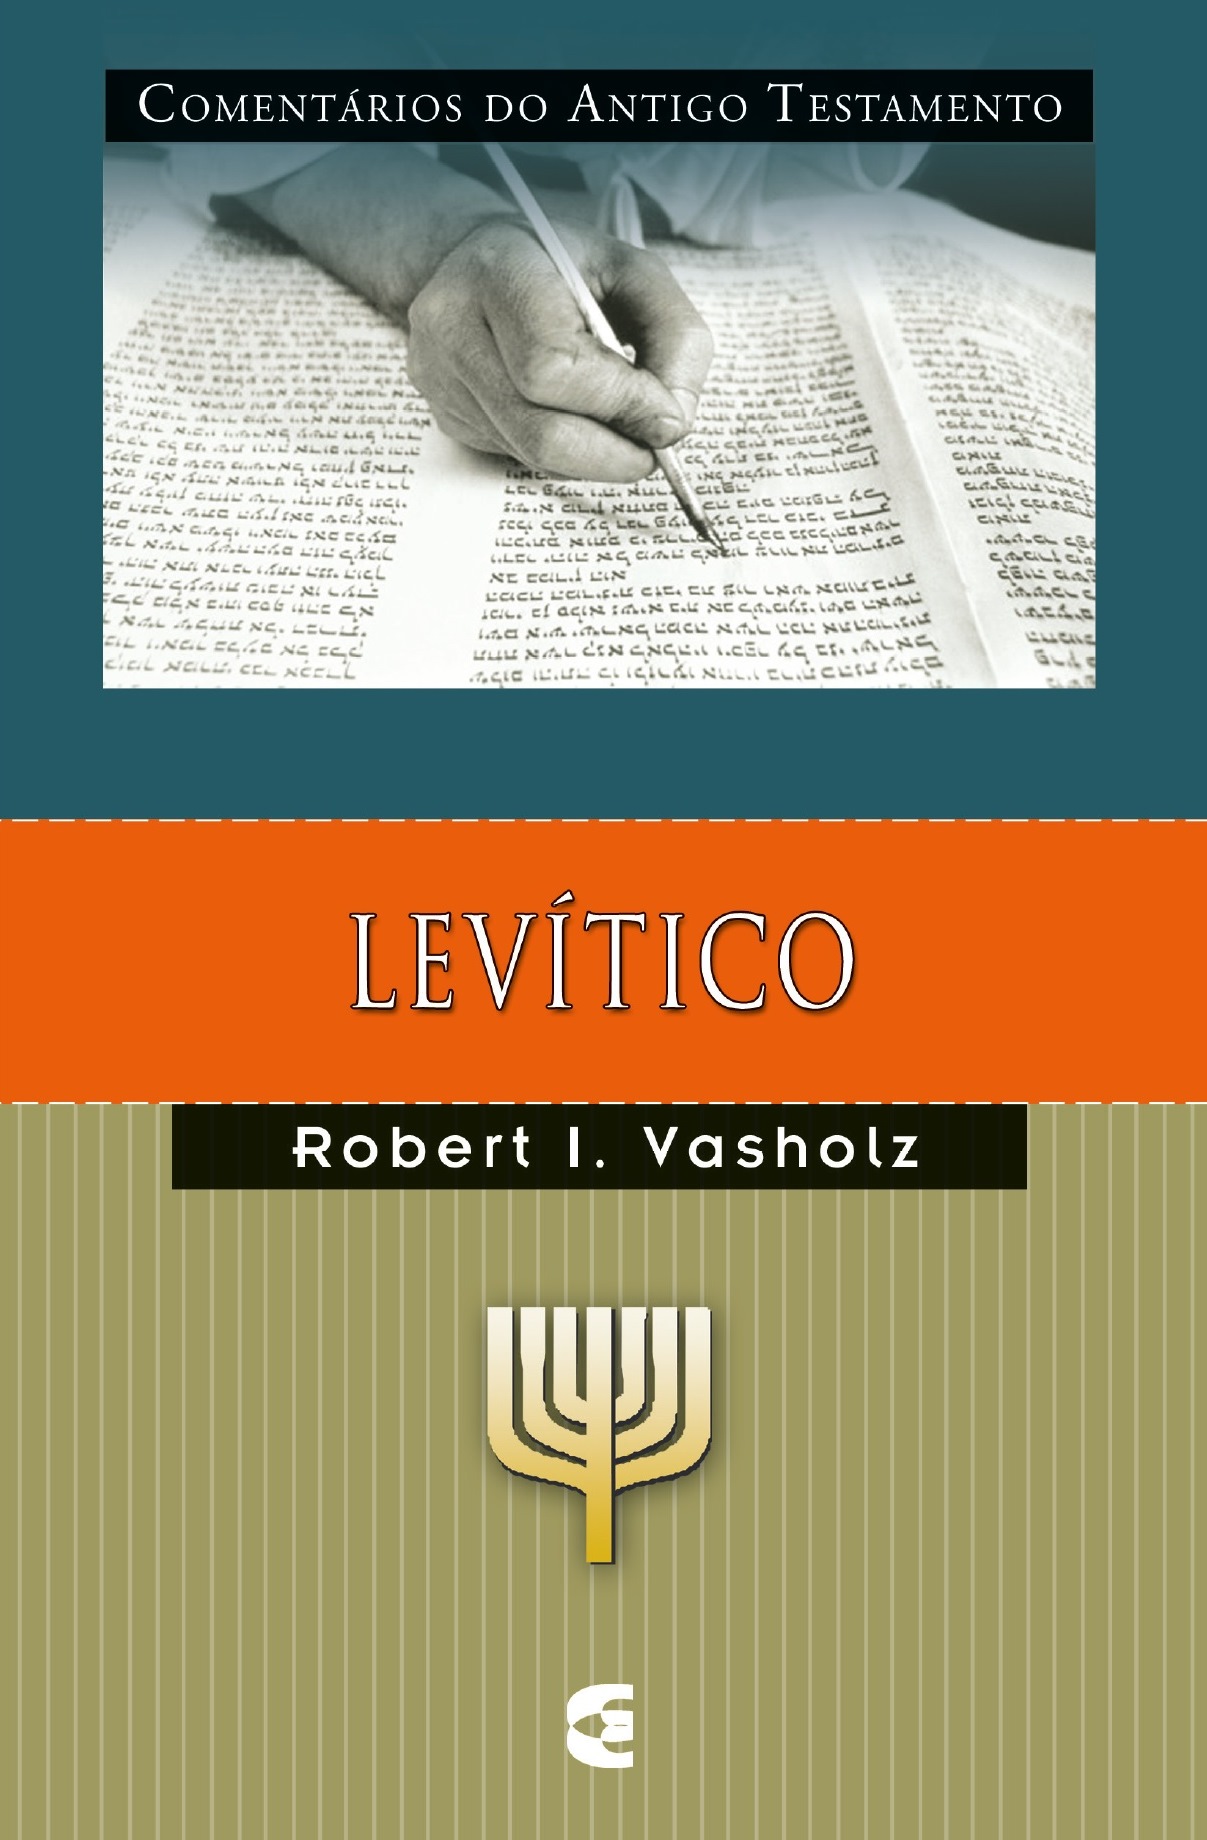 Comentário Do Antigo Testamento – Levítico